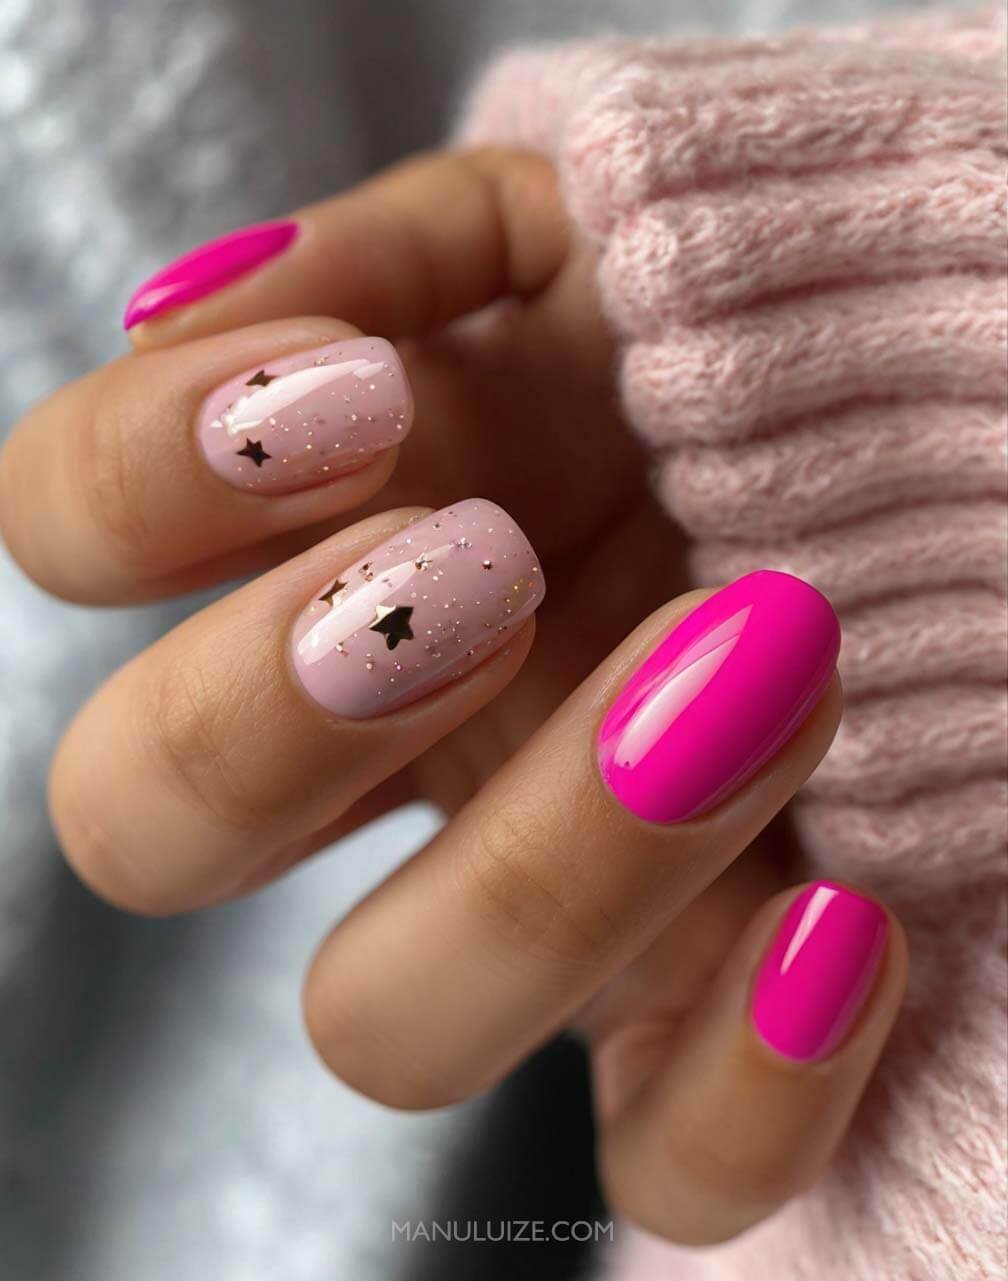 Pink stars nail art